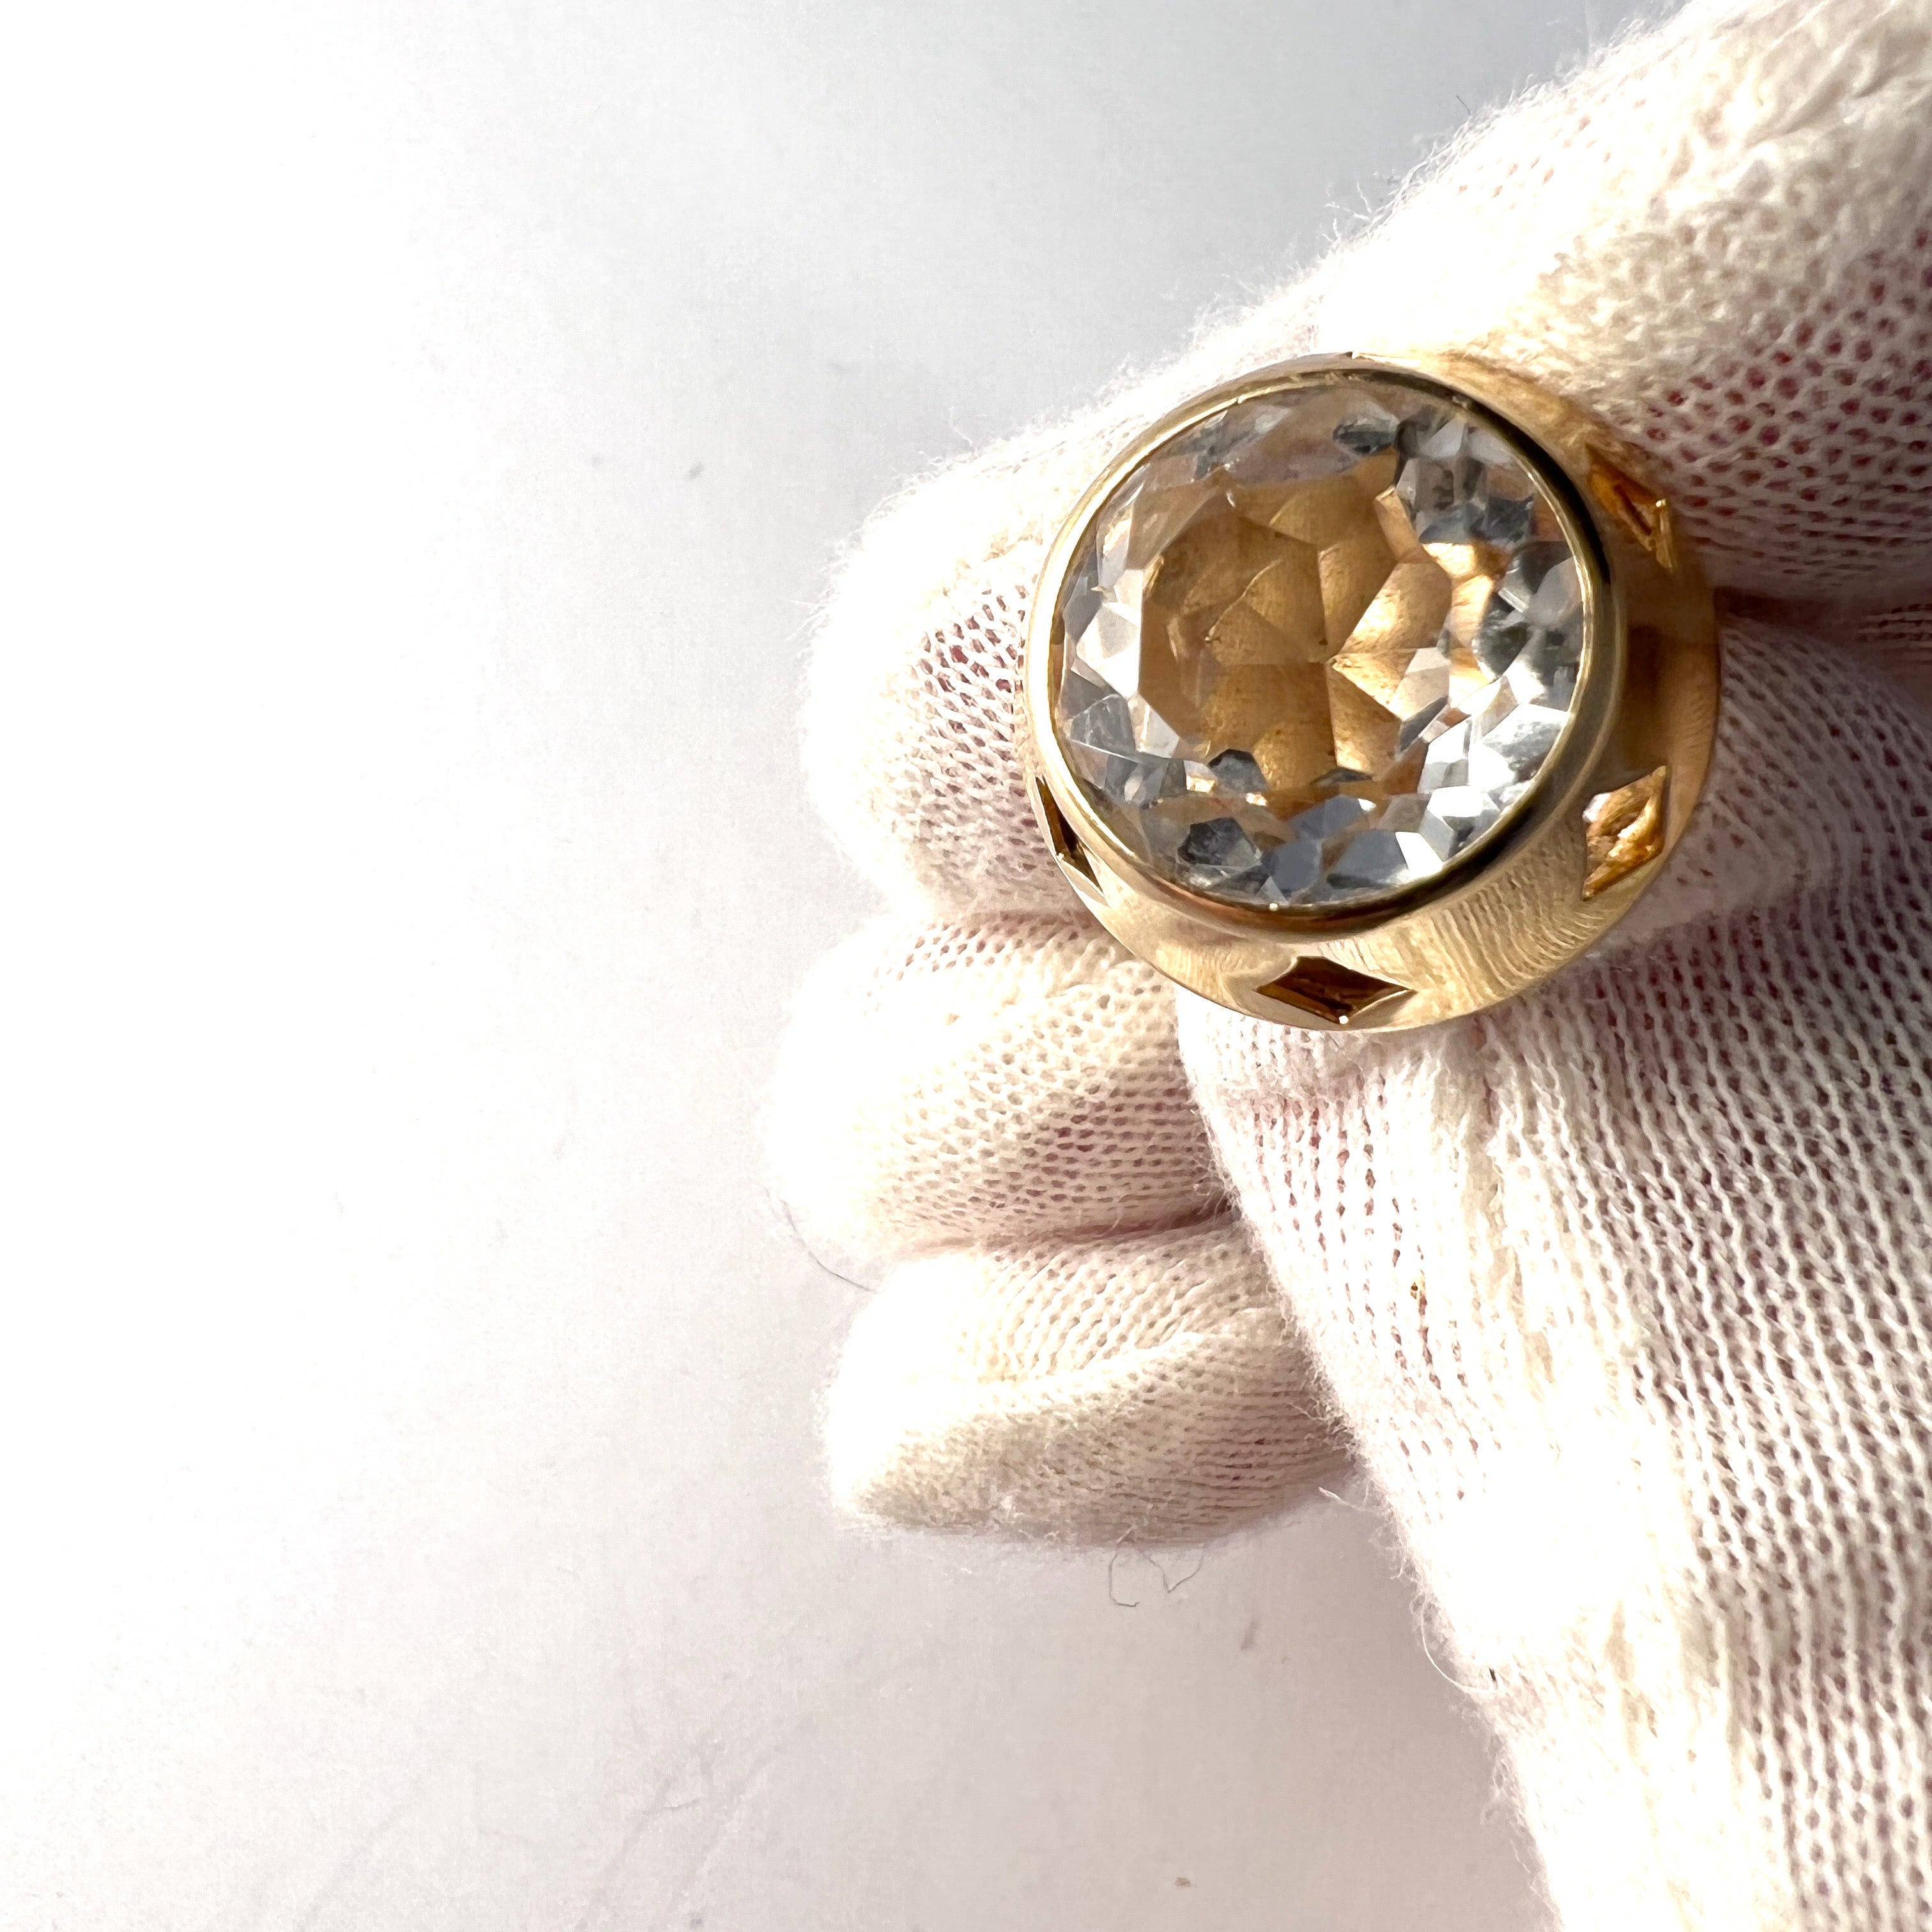 Finland 1960-70s. Vintage 18k Gold Rock Crystal Ring.